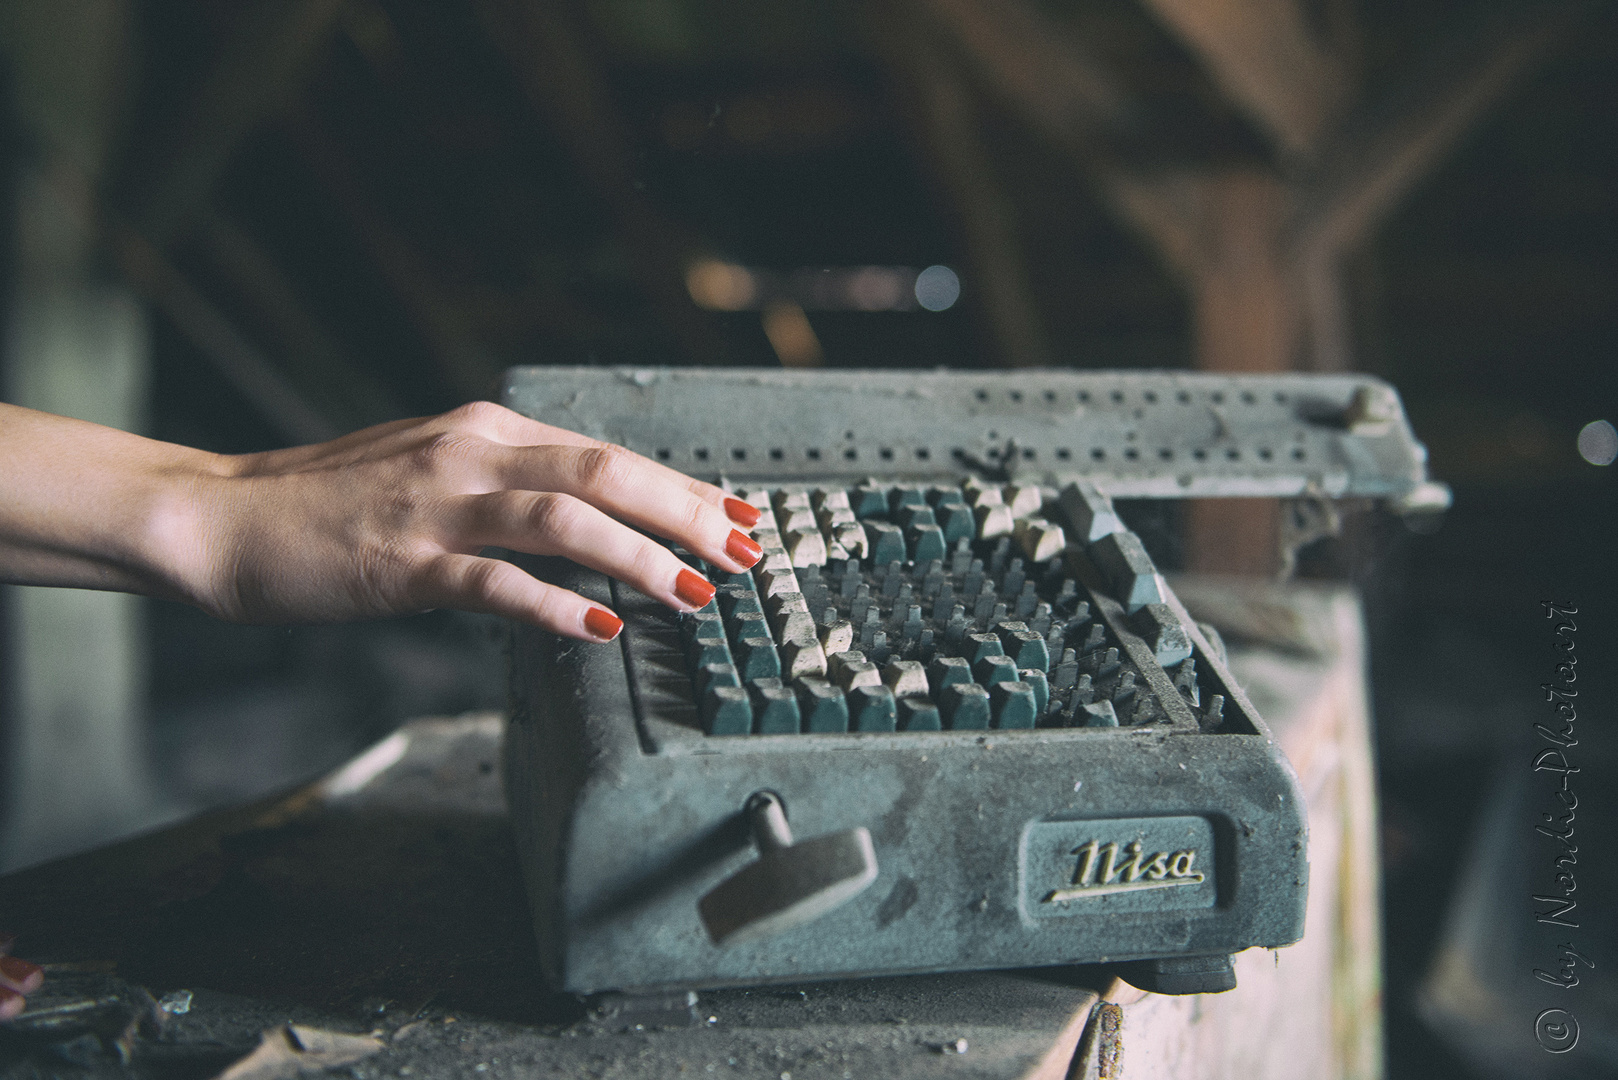 red nails on typewriter